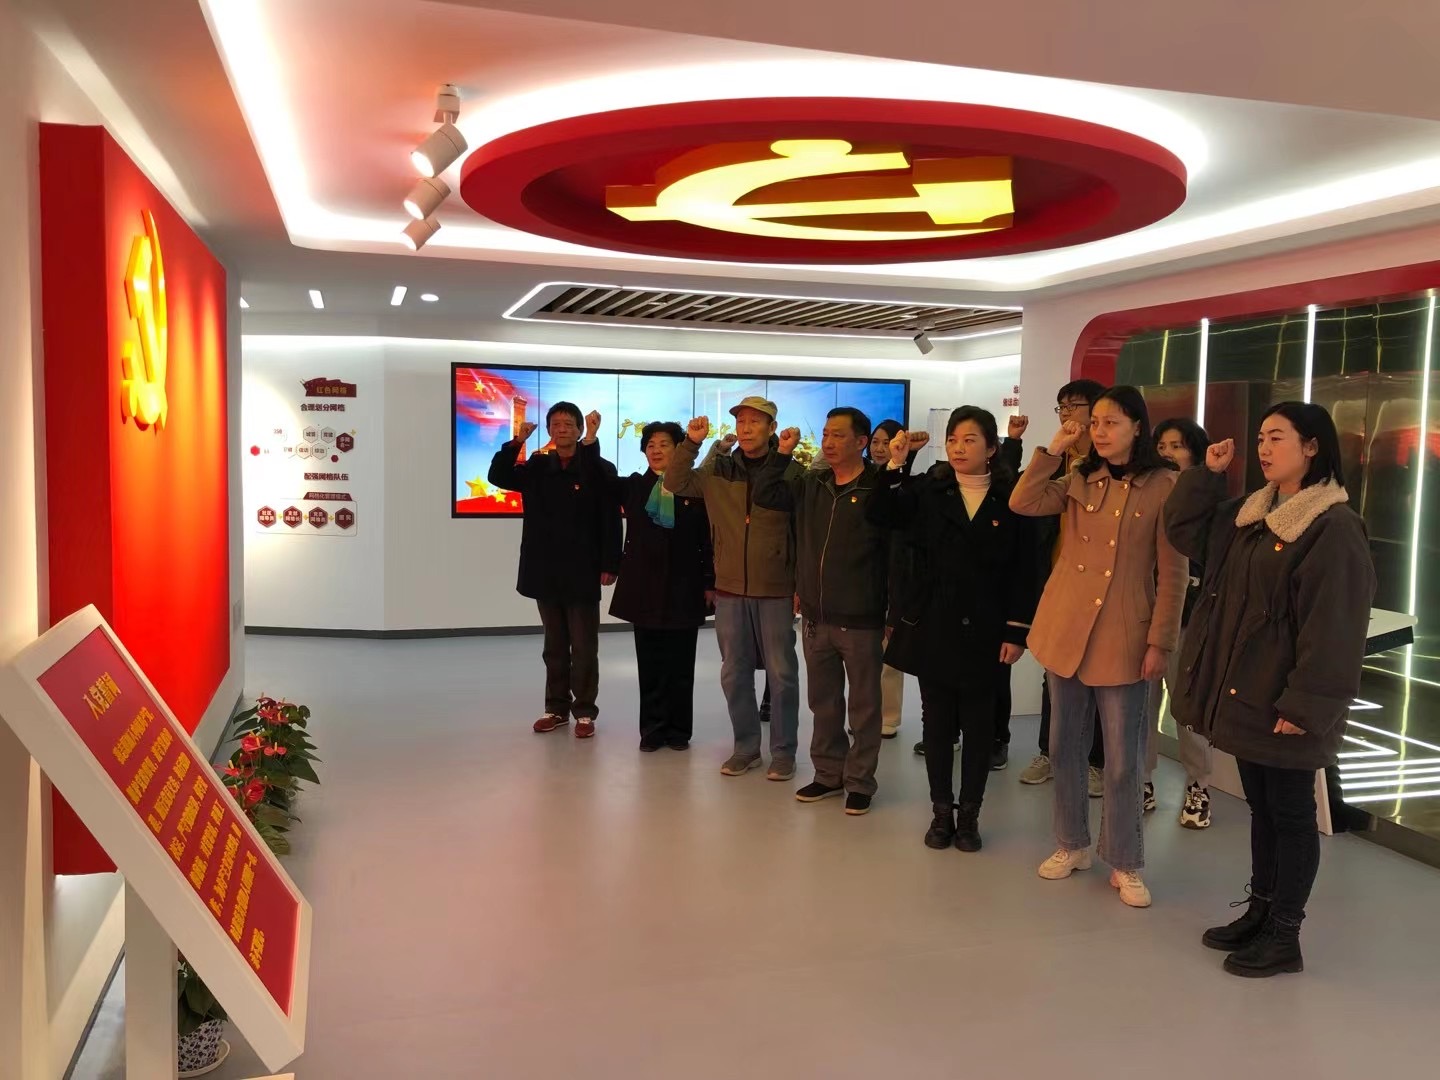 天福社区7个网格党支部的党员们重温入党誓词。刘世军摄